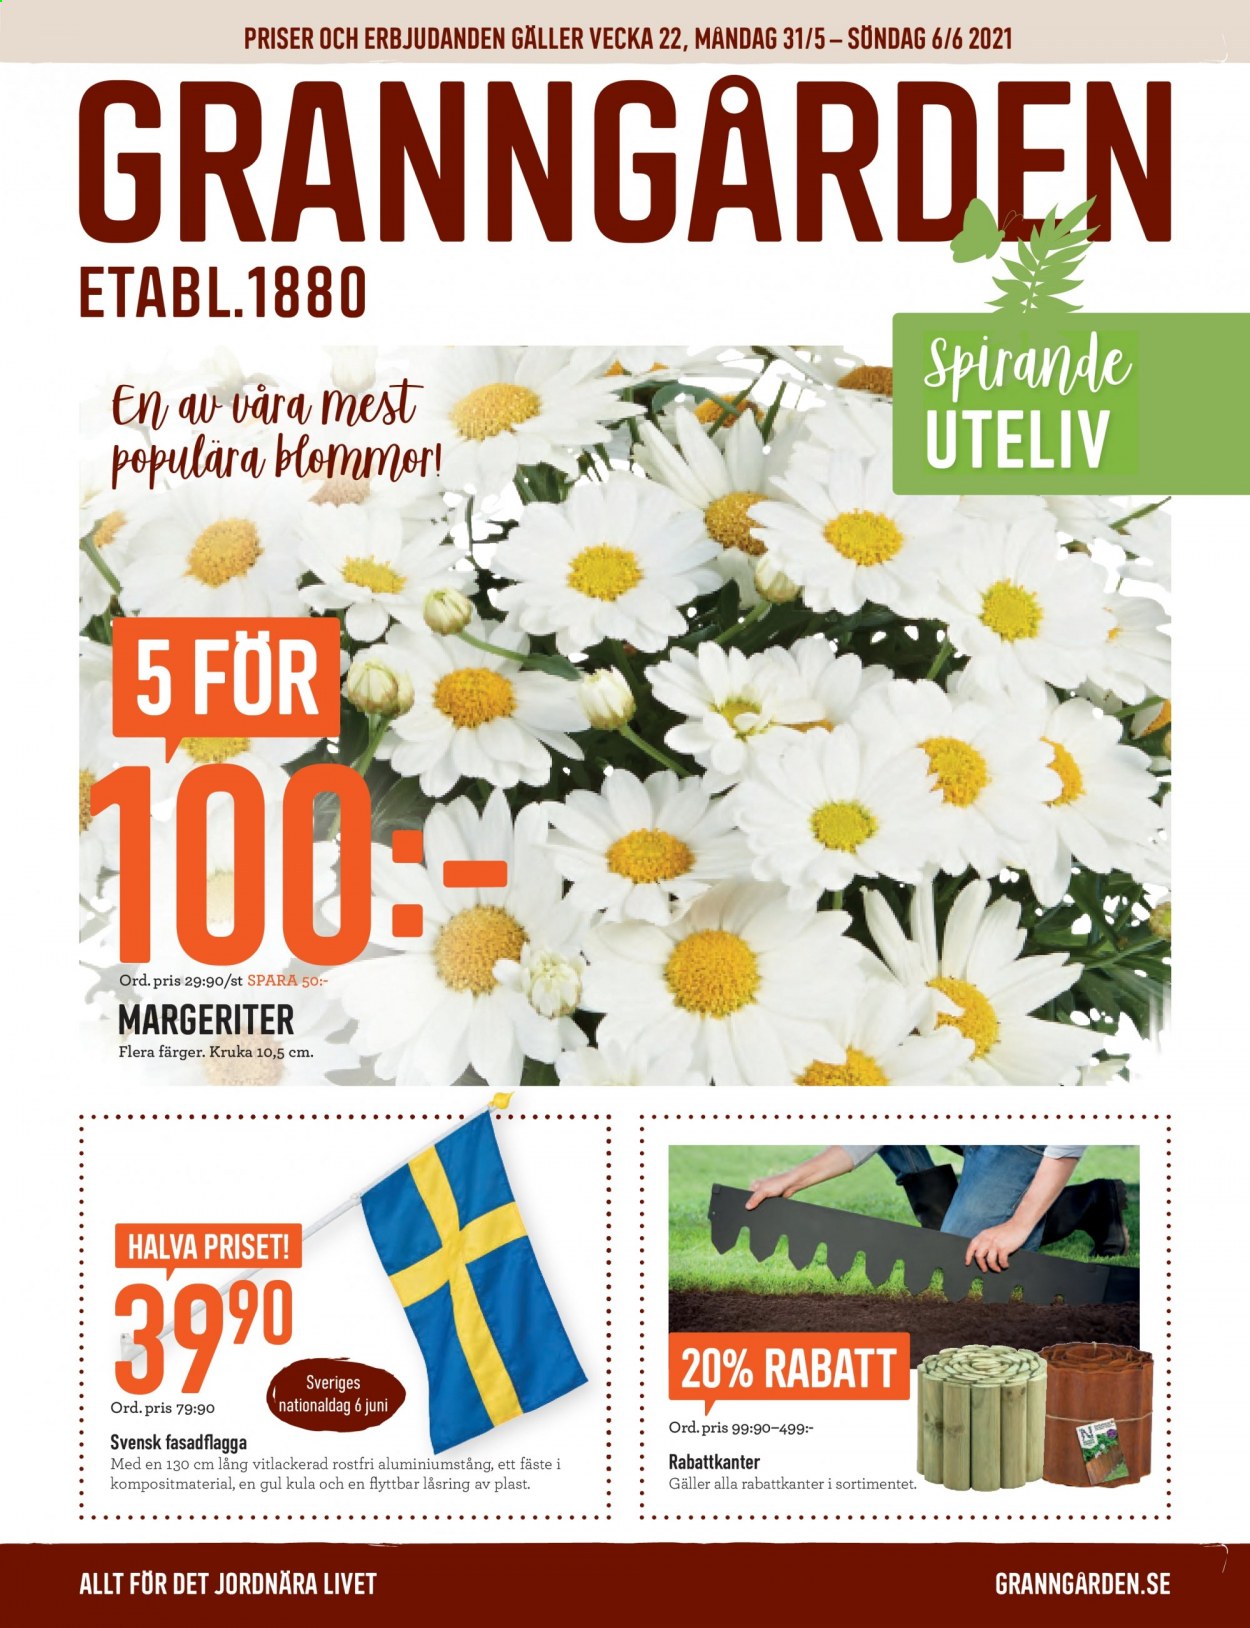 Granngården reklamblad - 31/5 2021 - 6/6 2021.